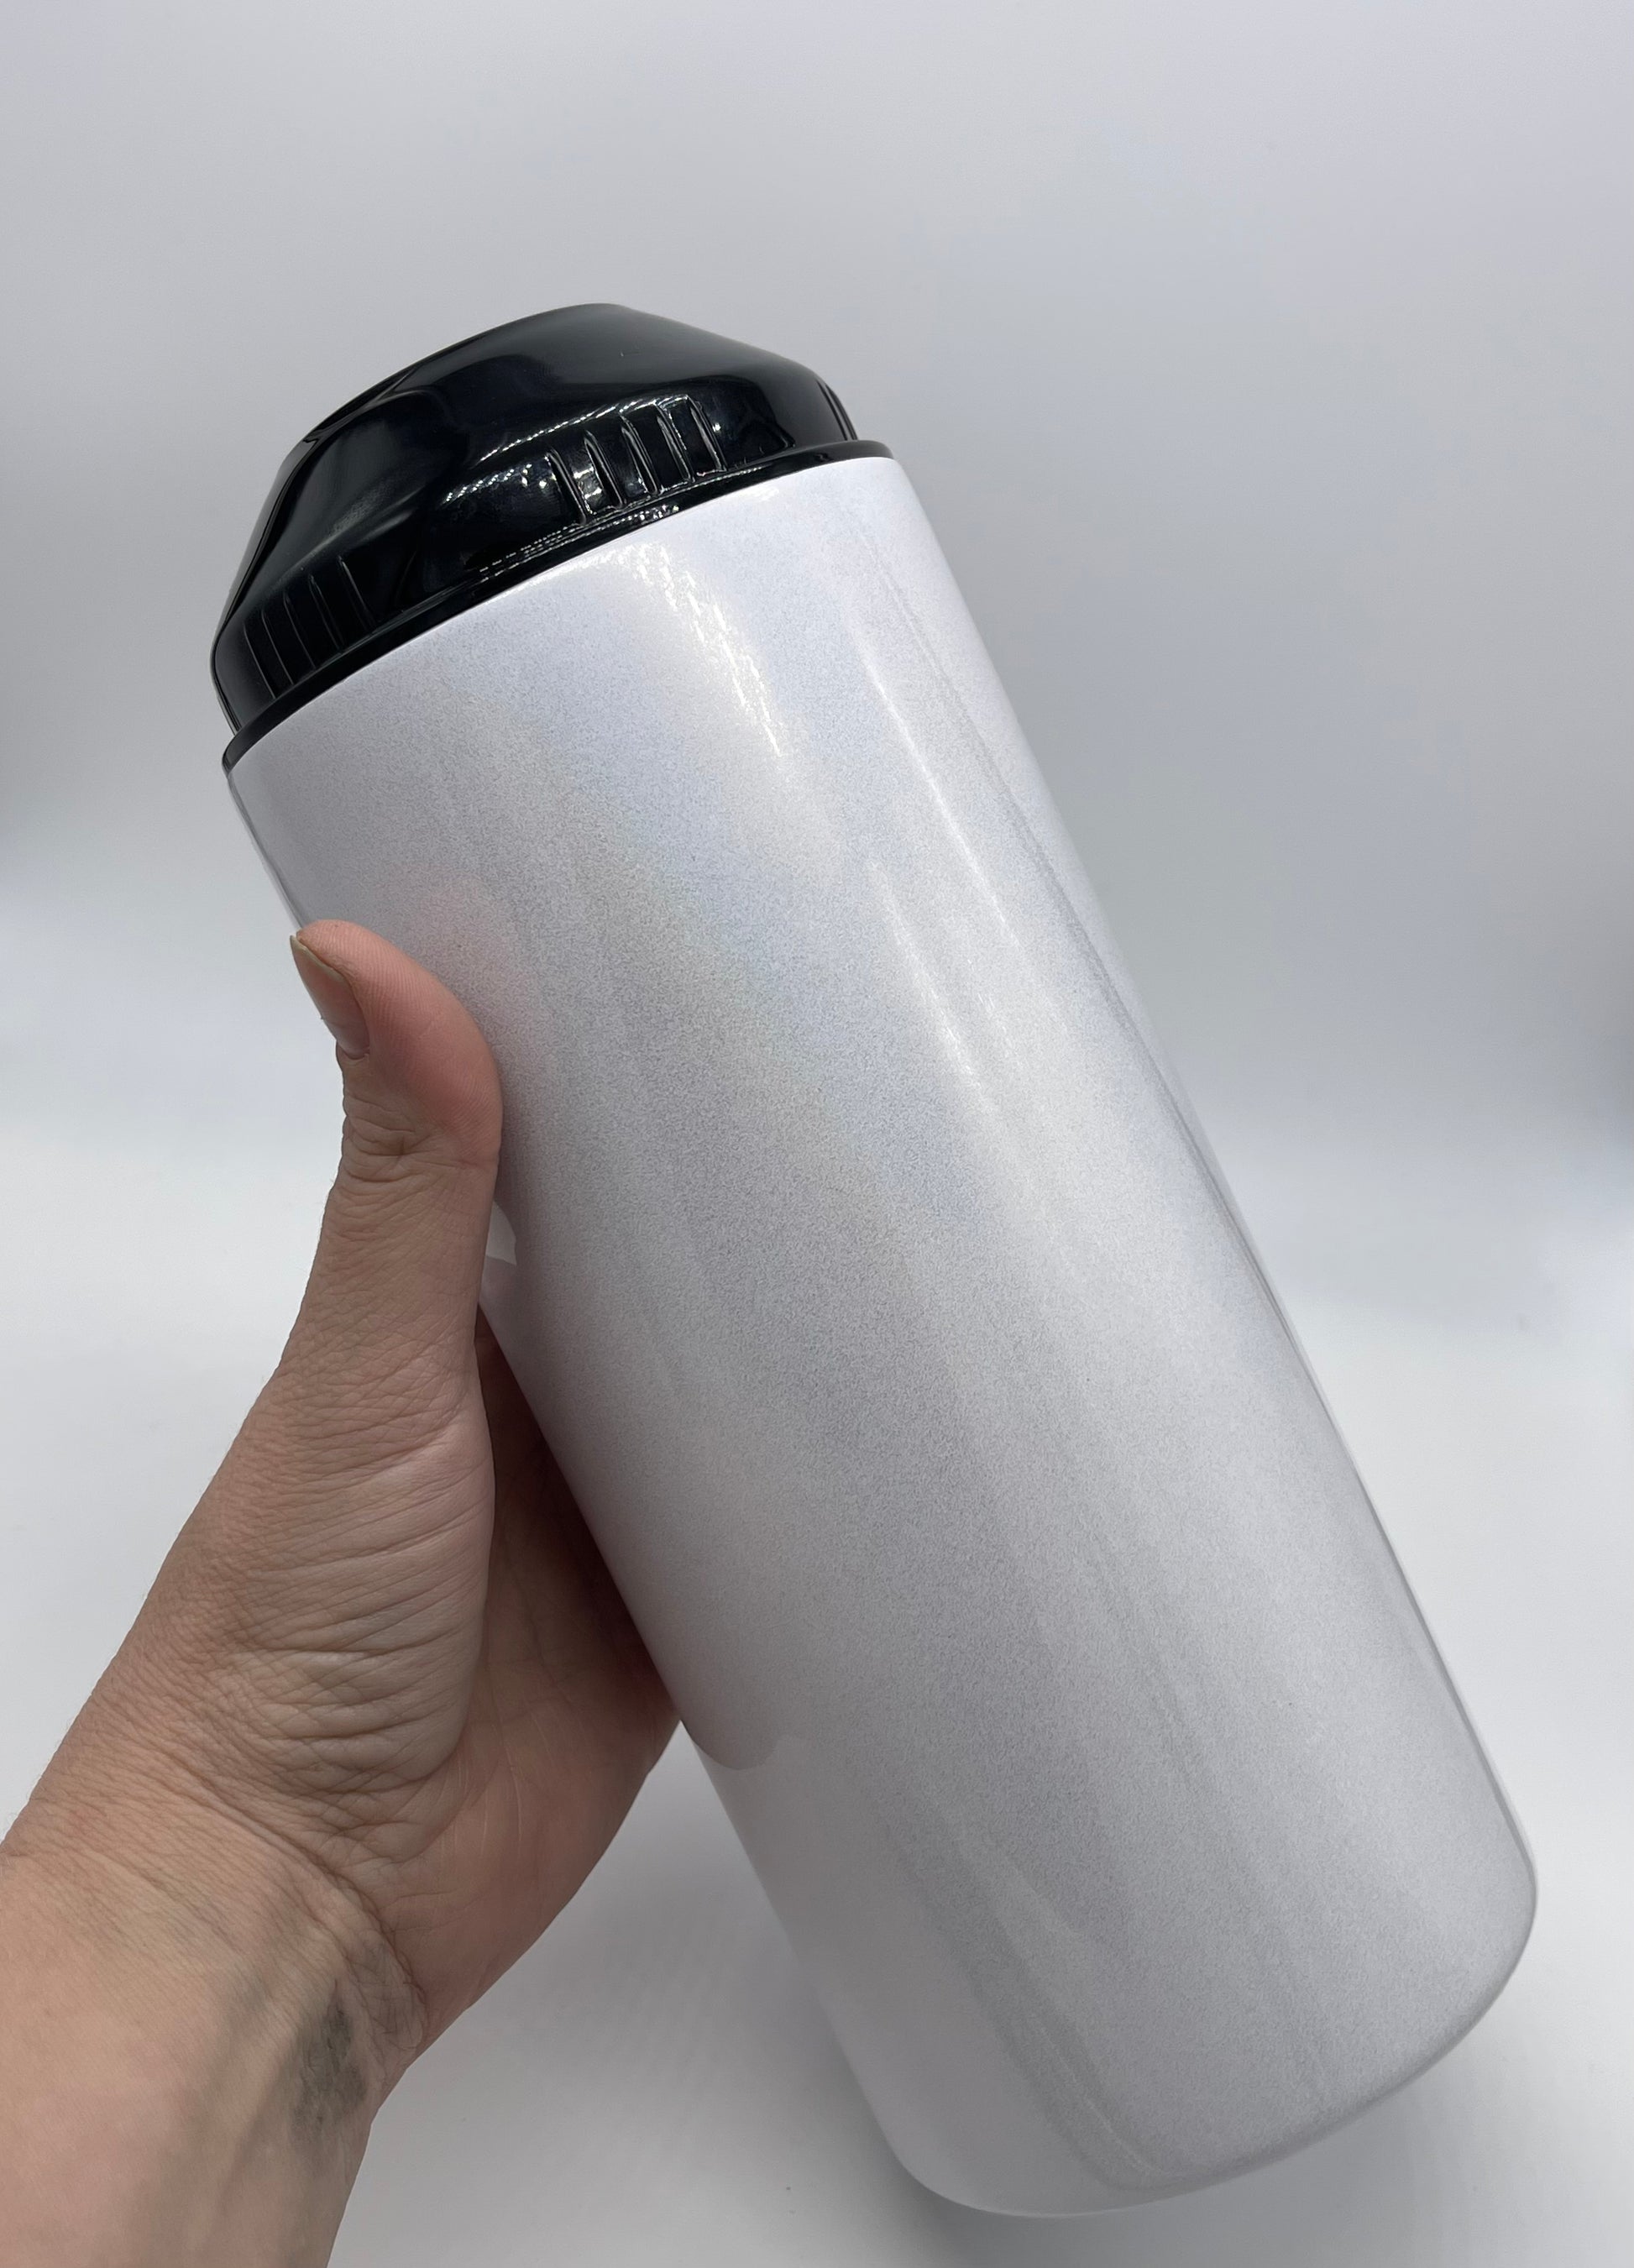 Tumbler or water bottle holder - sublimation blank